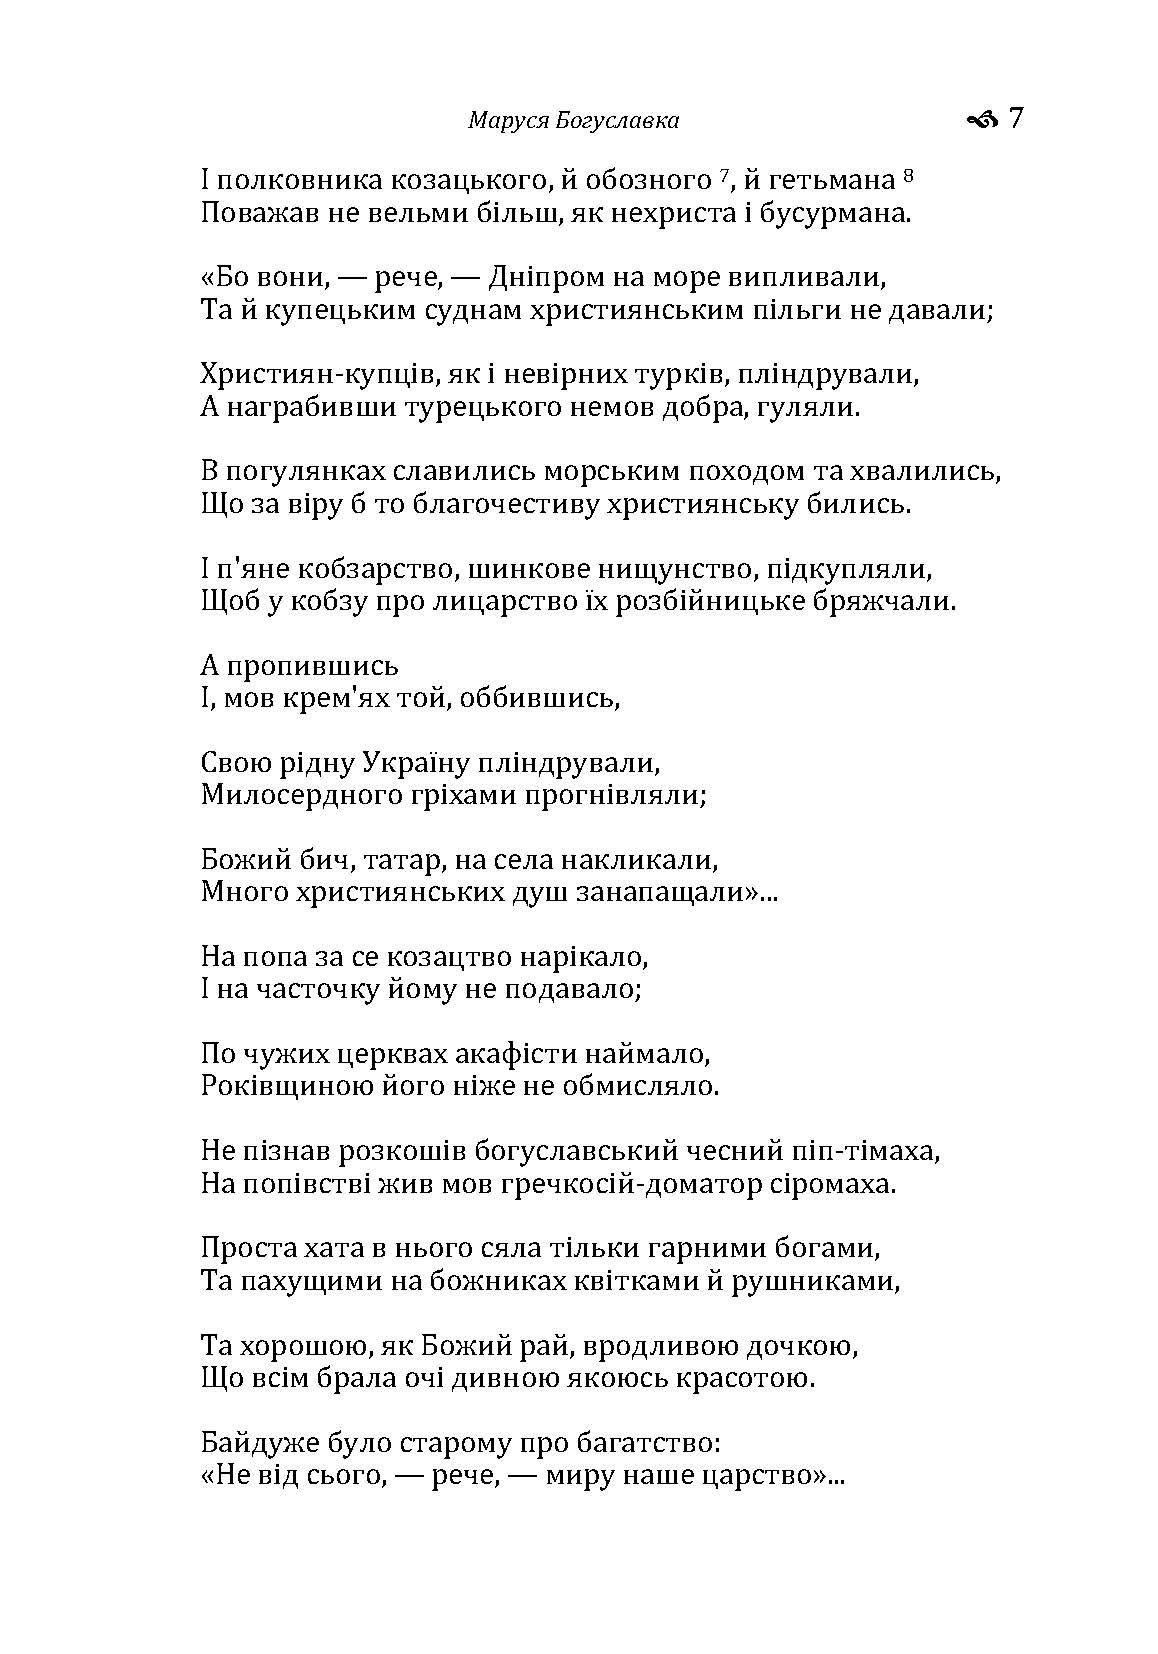 Маруся Богуславка. Автор — Куліш П.О.. 